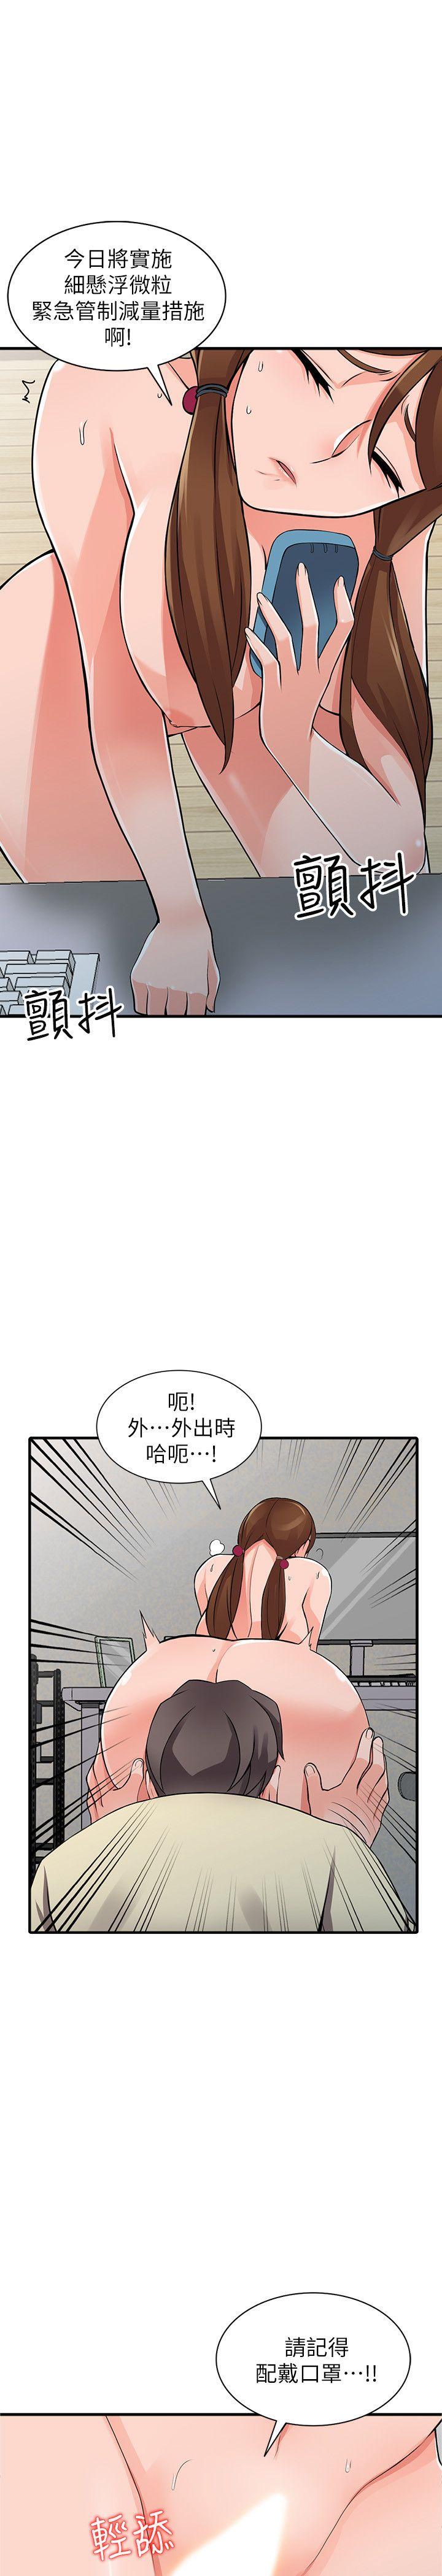 《异乡人:意外桃花源》漫画 第17话-真无聊，用妳来打发时间吧!